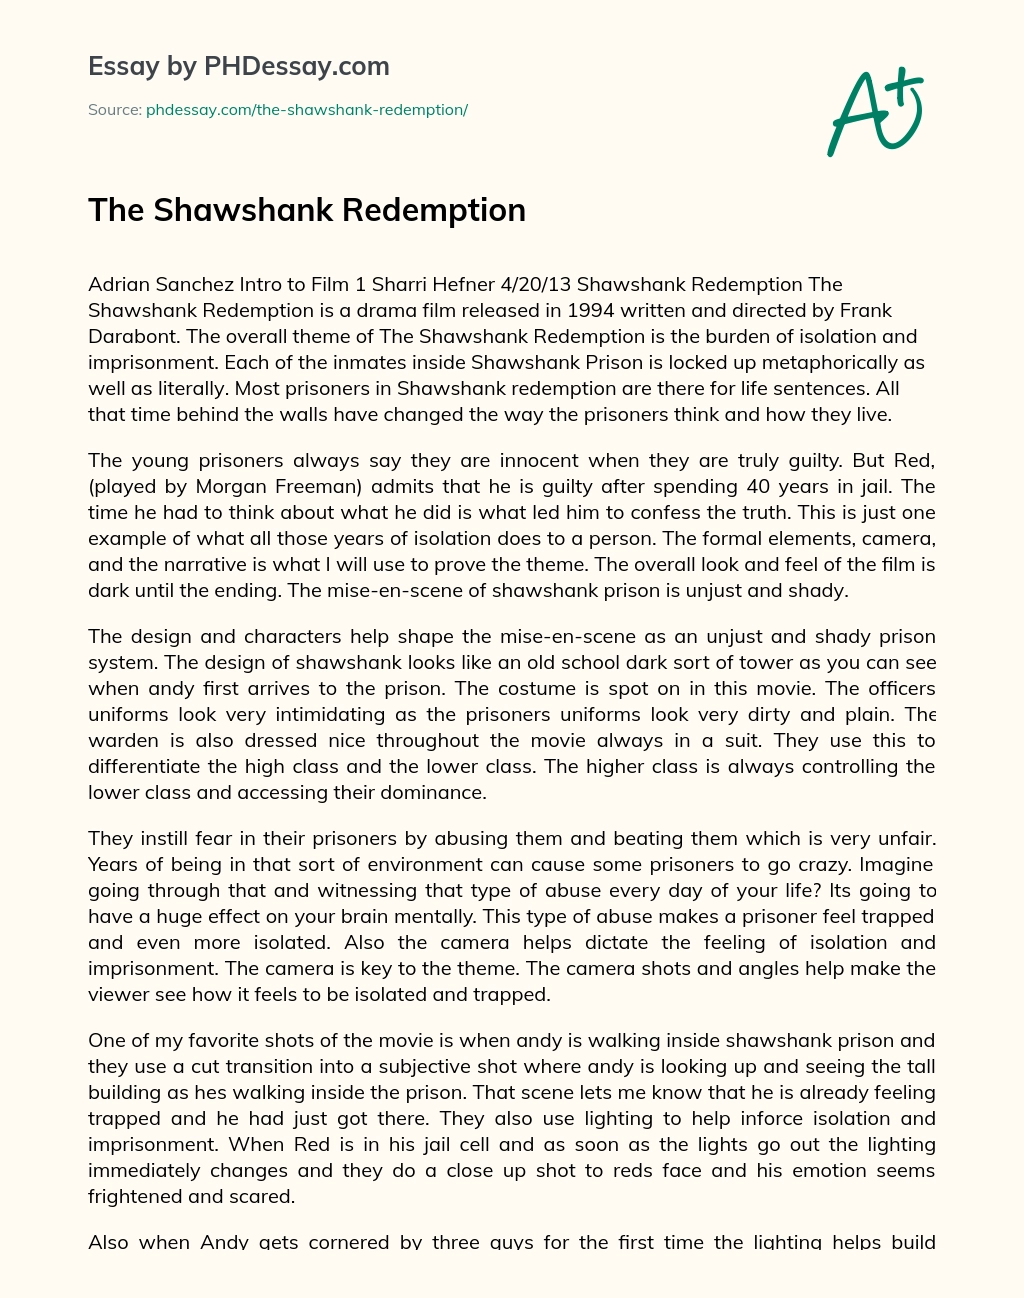 shawshank redemption analysis essay